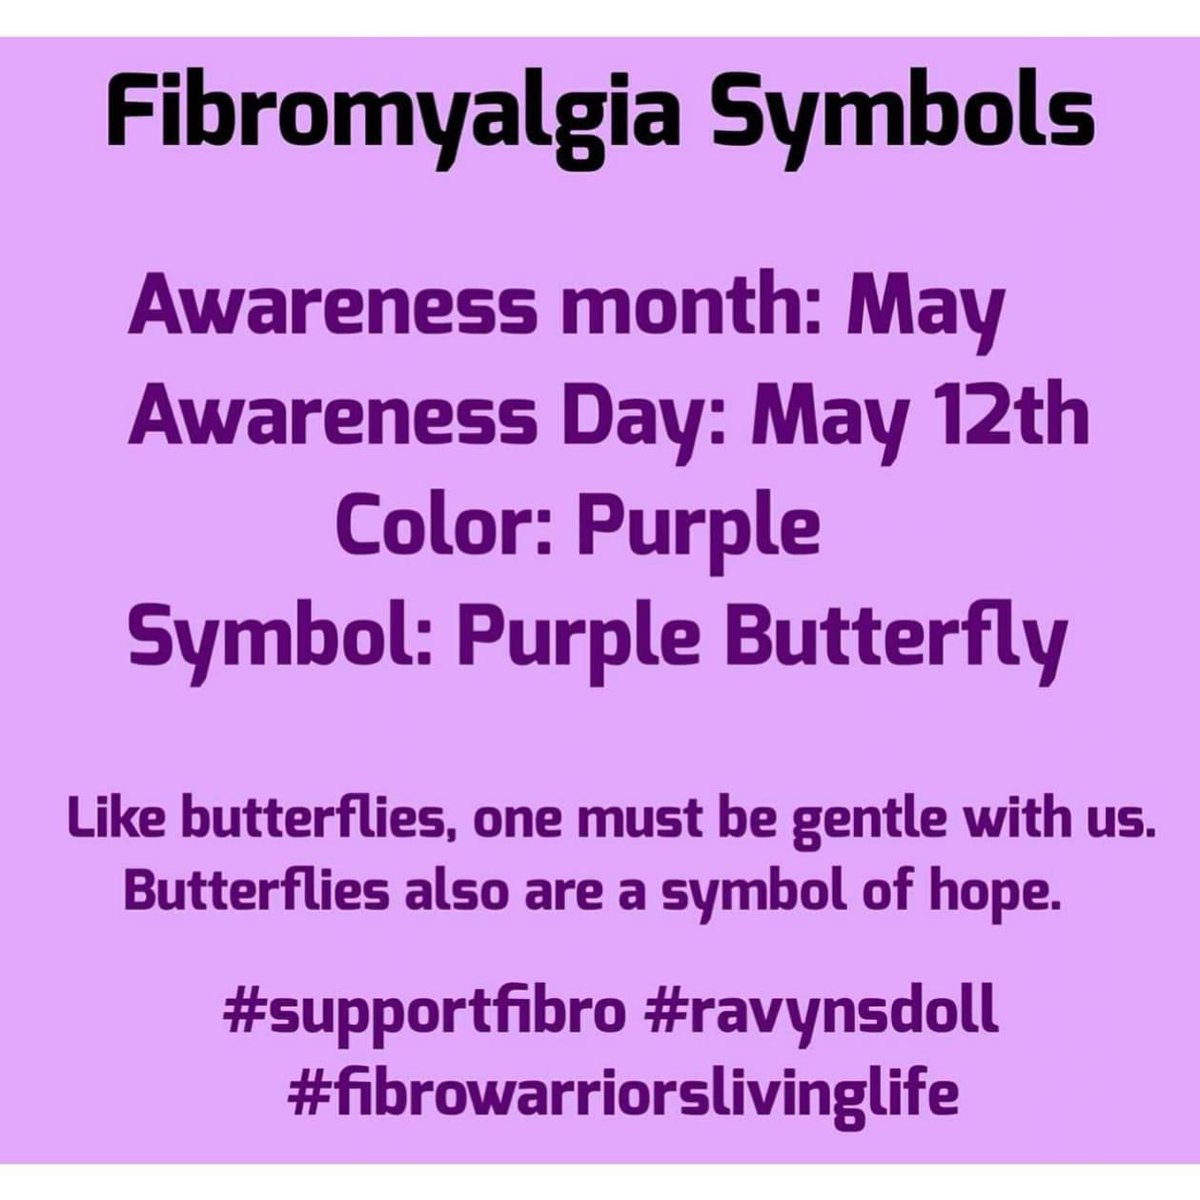 #fibromialgia #chronicillnesswarrior